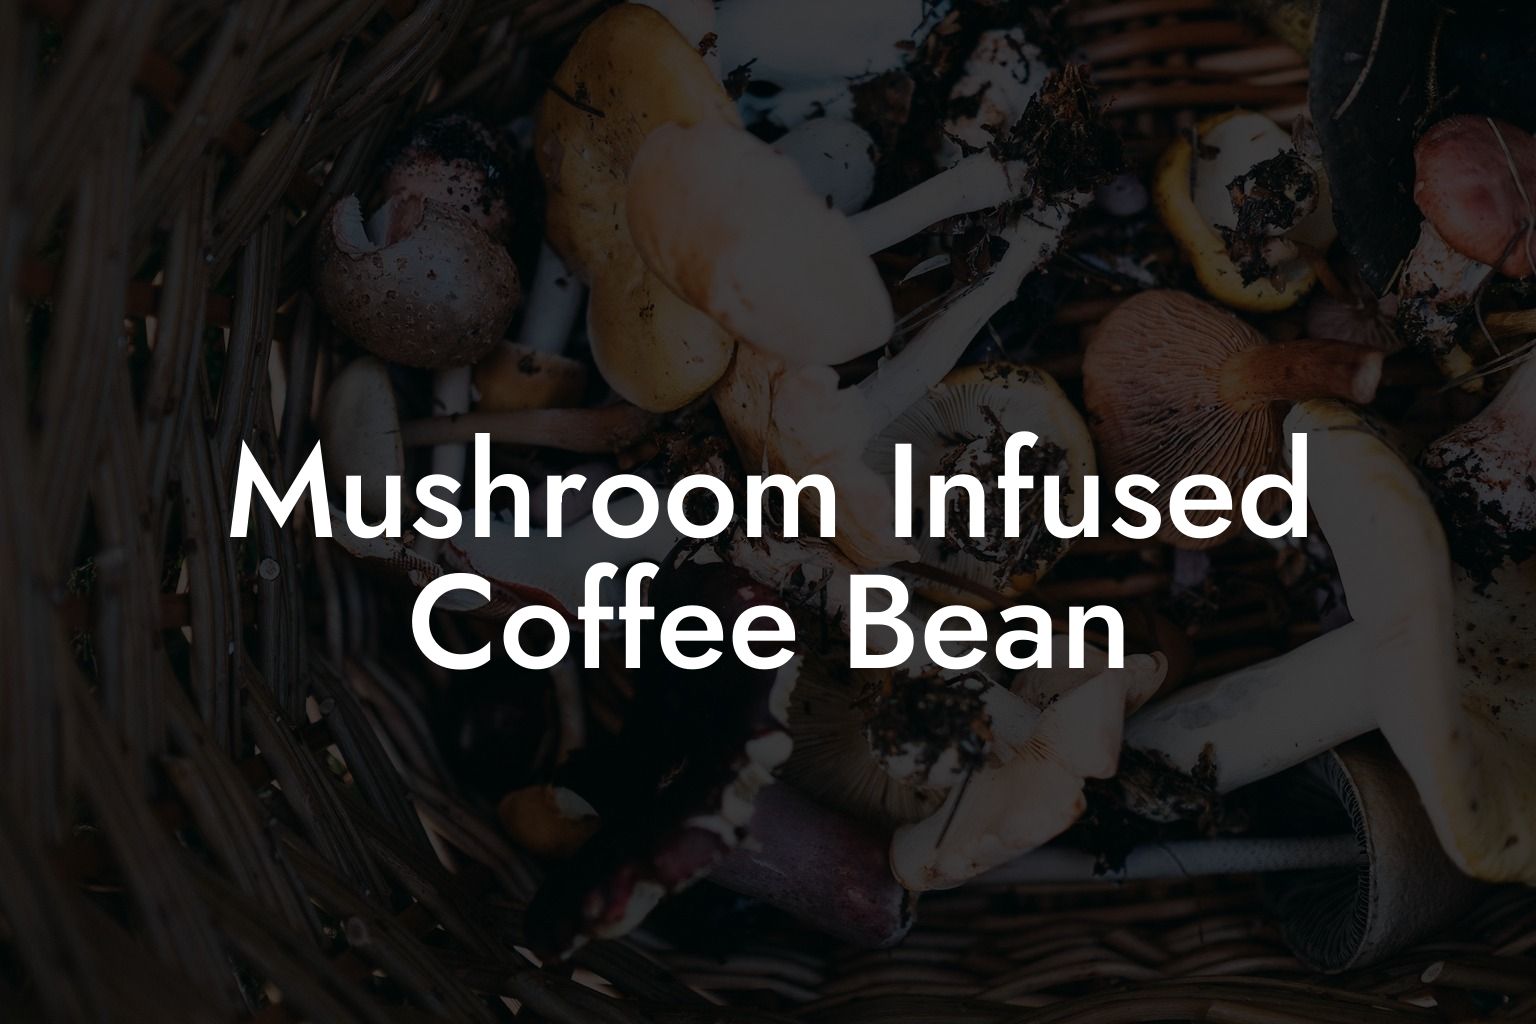 Mushroom Infused Coffee Bean